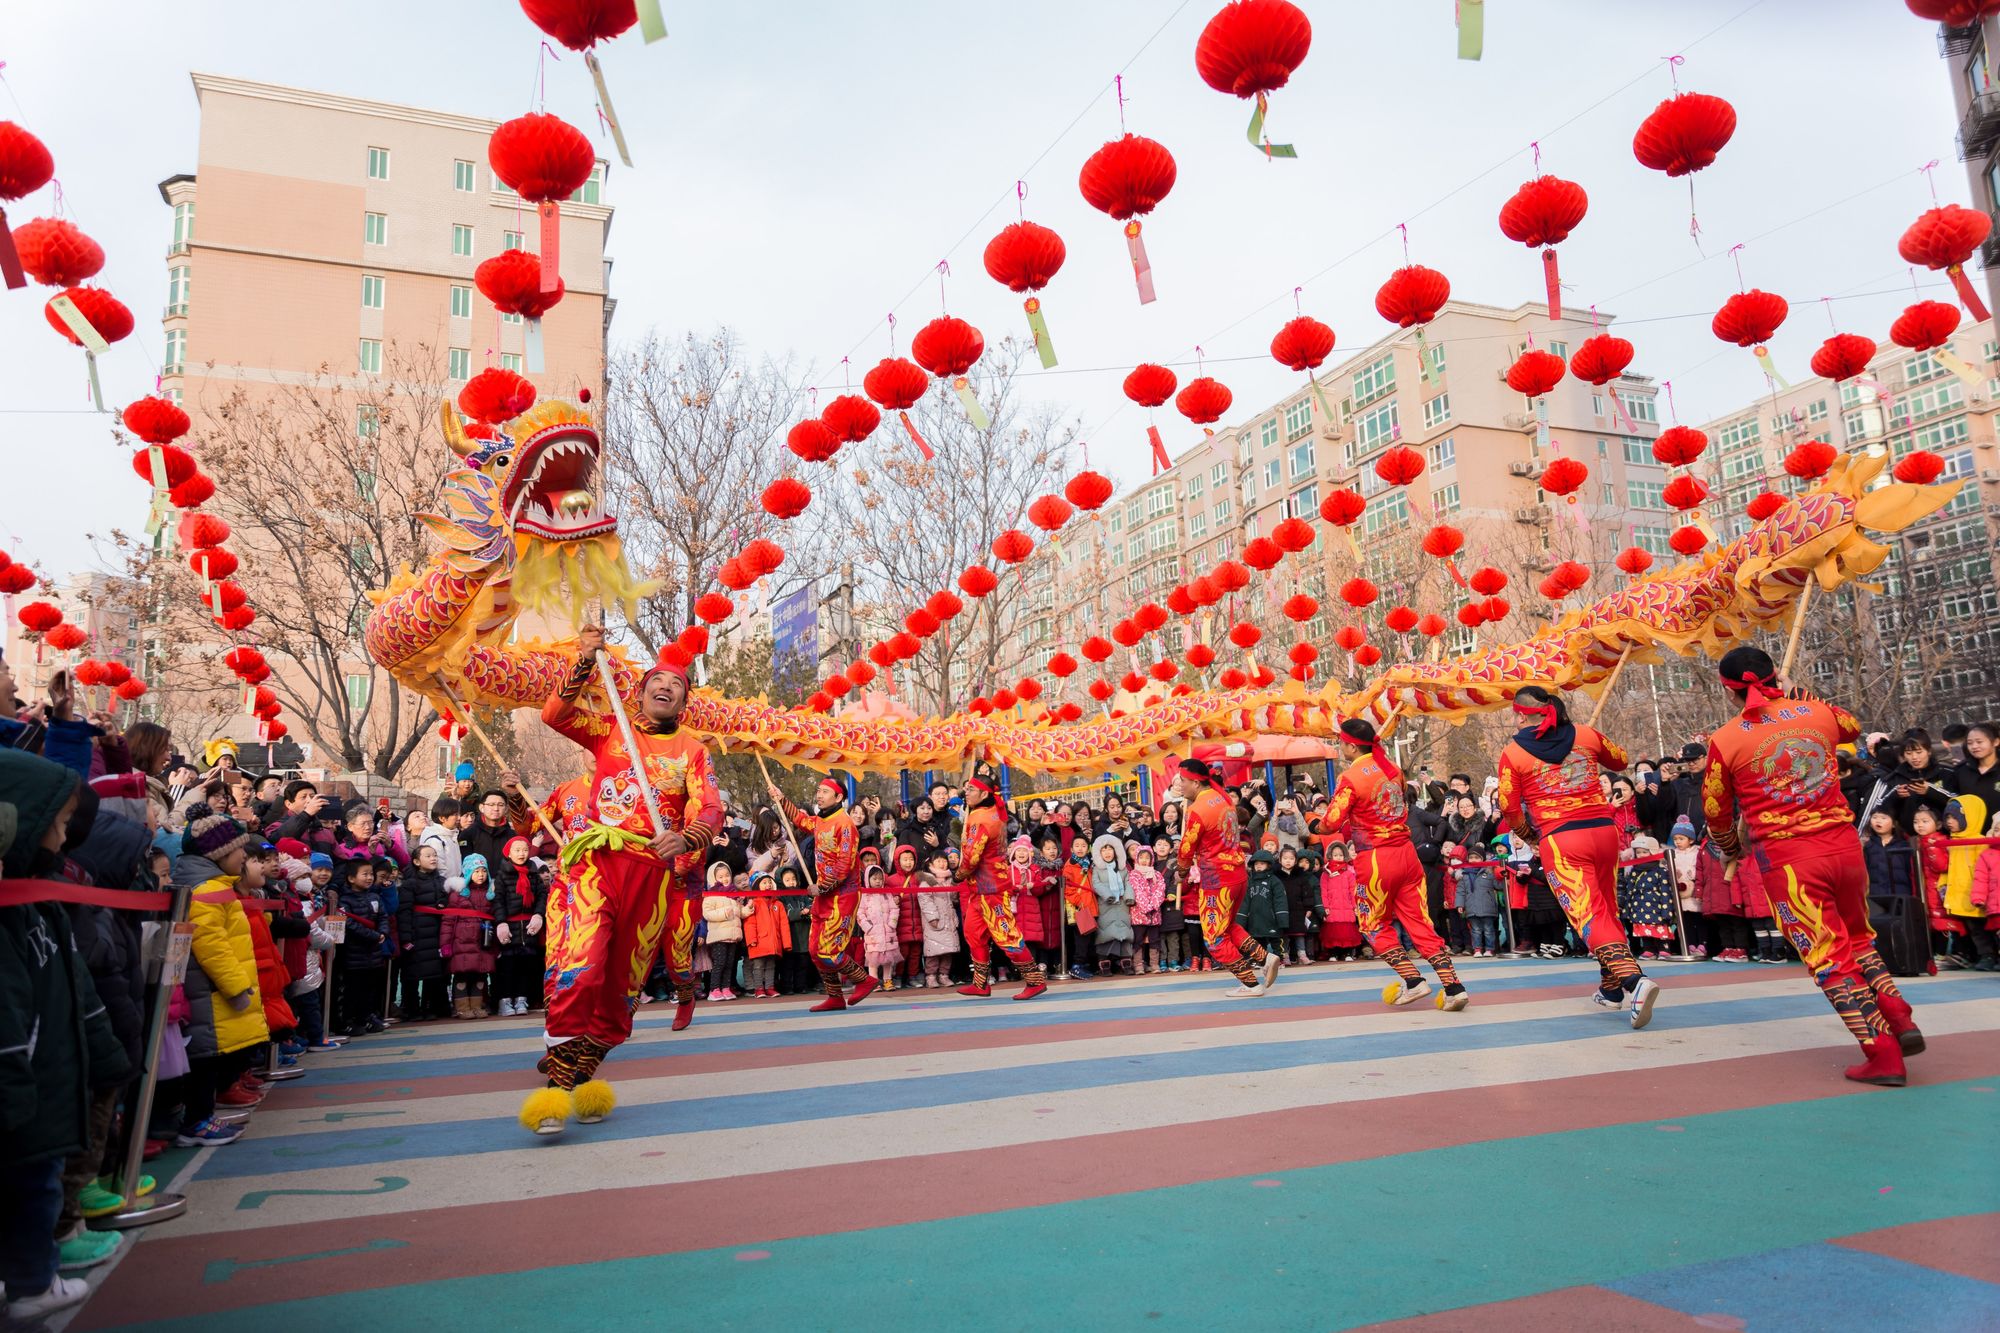 老北京的传统节日欢乐起来?的理想环境已不复存在